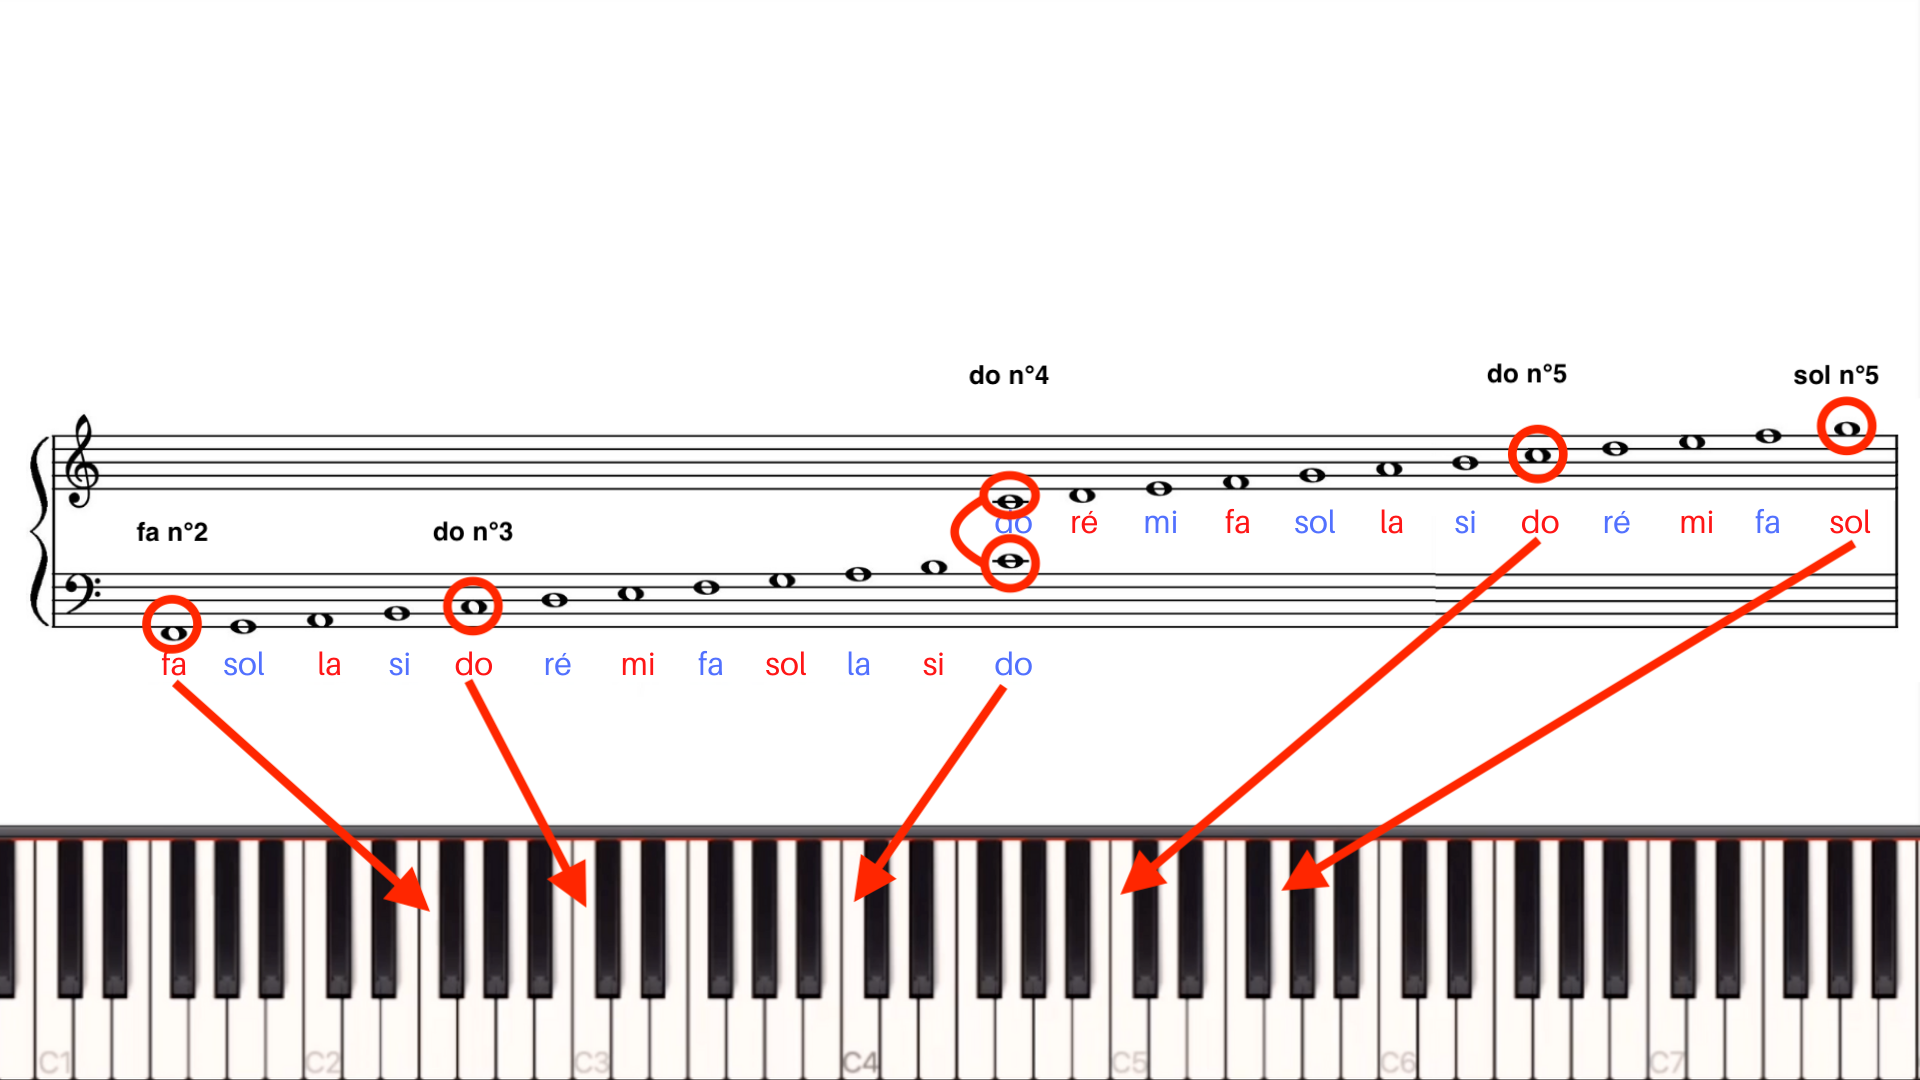 Lire les partitions de piano – clés et notes